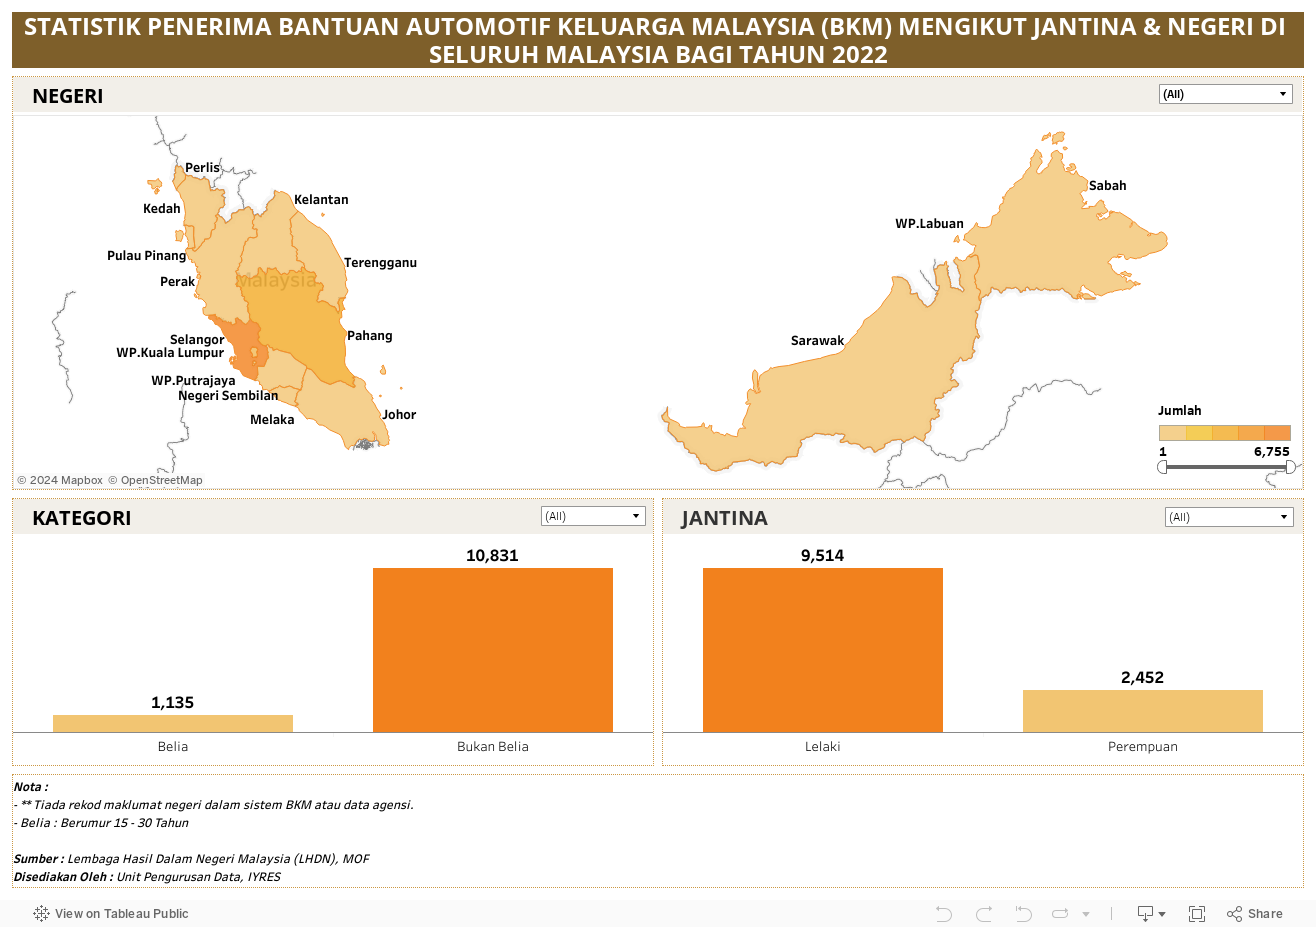 STATISTIK PENERIMA BANTUAN AUTOMOTIF KELUARGA MALAYSIA (BKM) MENGIKUT JANTINA & NEGERI DI SELURUH MALAYSIA BAGI TAHUN 2022 